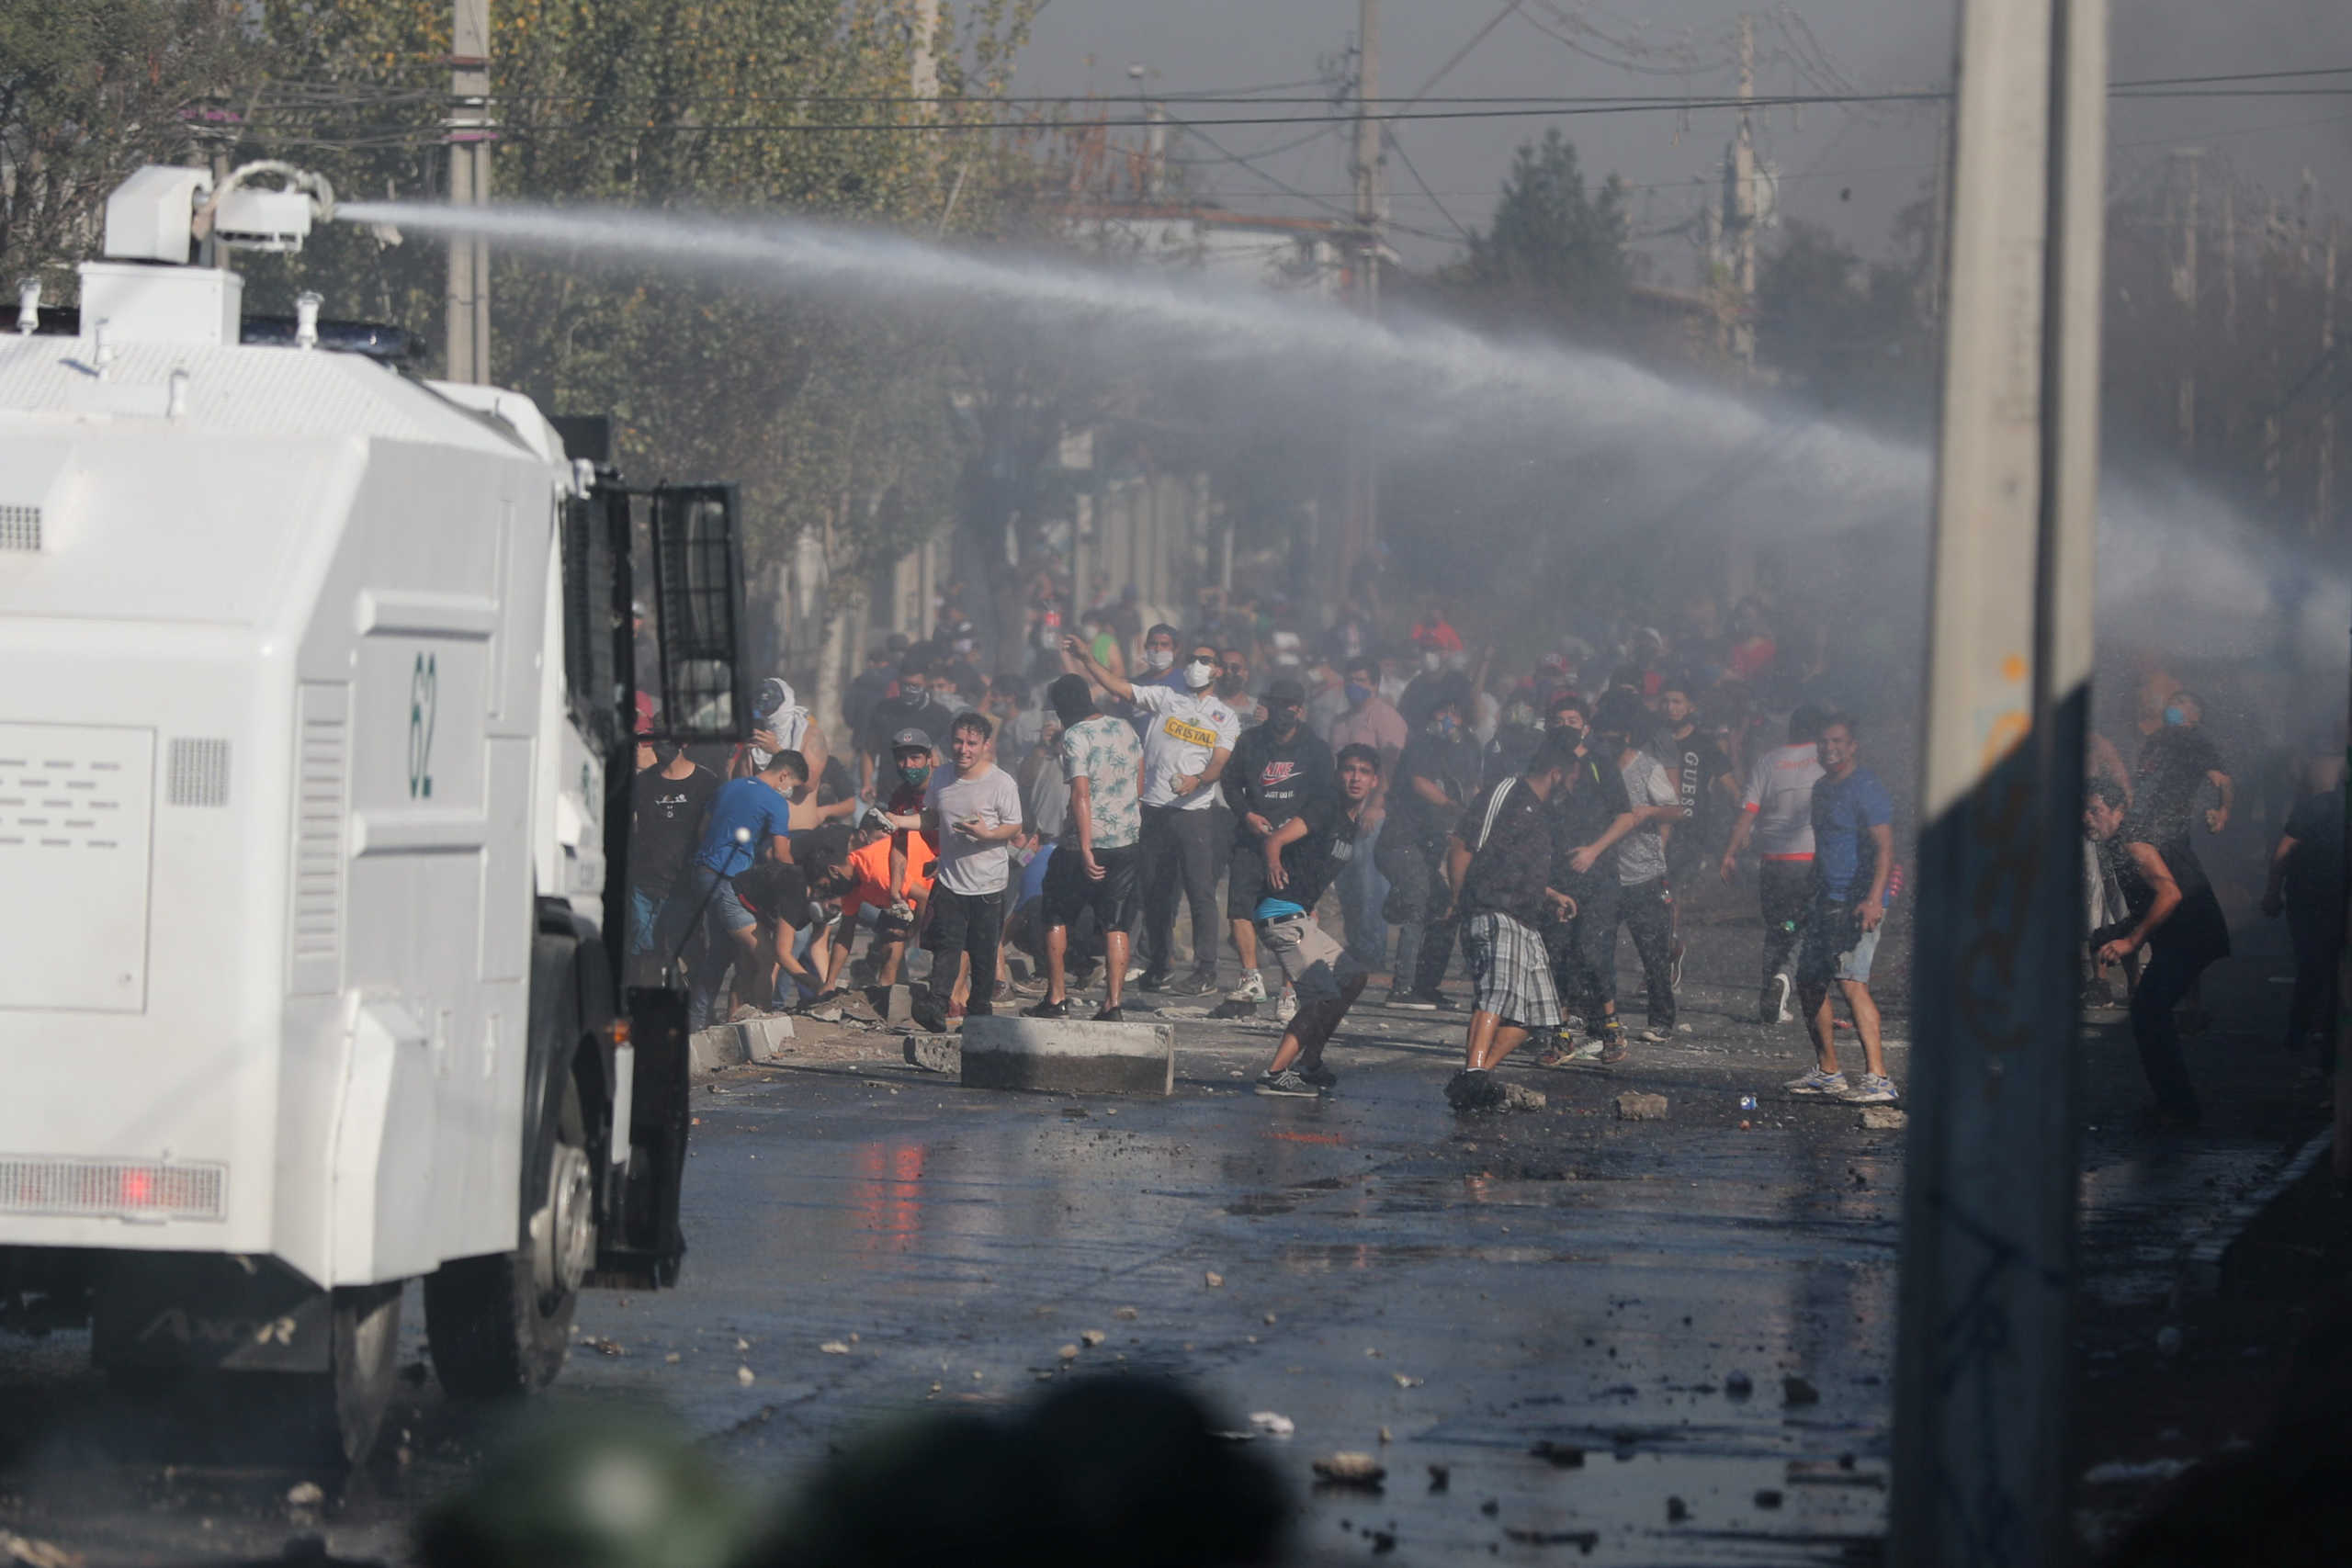 “Φωτιά” ξανά στην Χιλή! Έλλειψη τροφίμων και συγκρούσεις στις φτωχογειτονιές του Σαντιάγκο (pics, video)